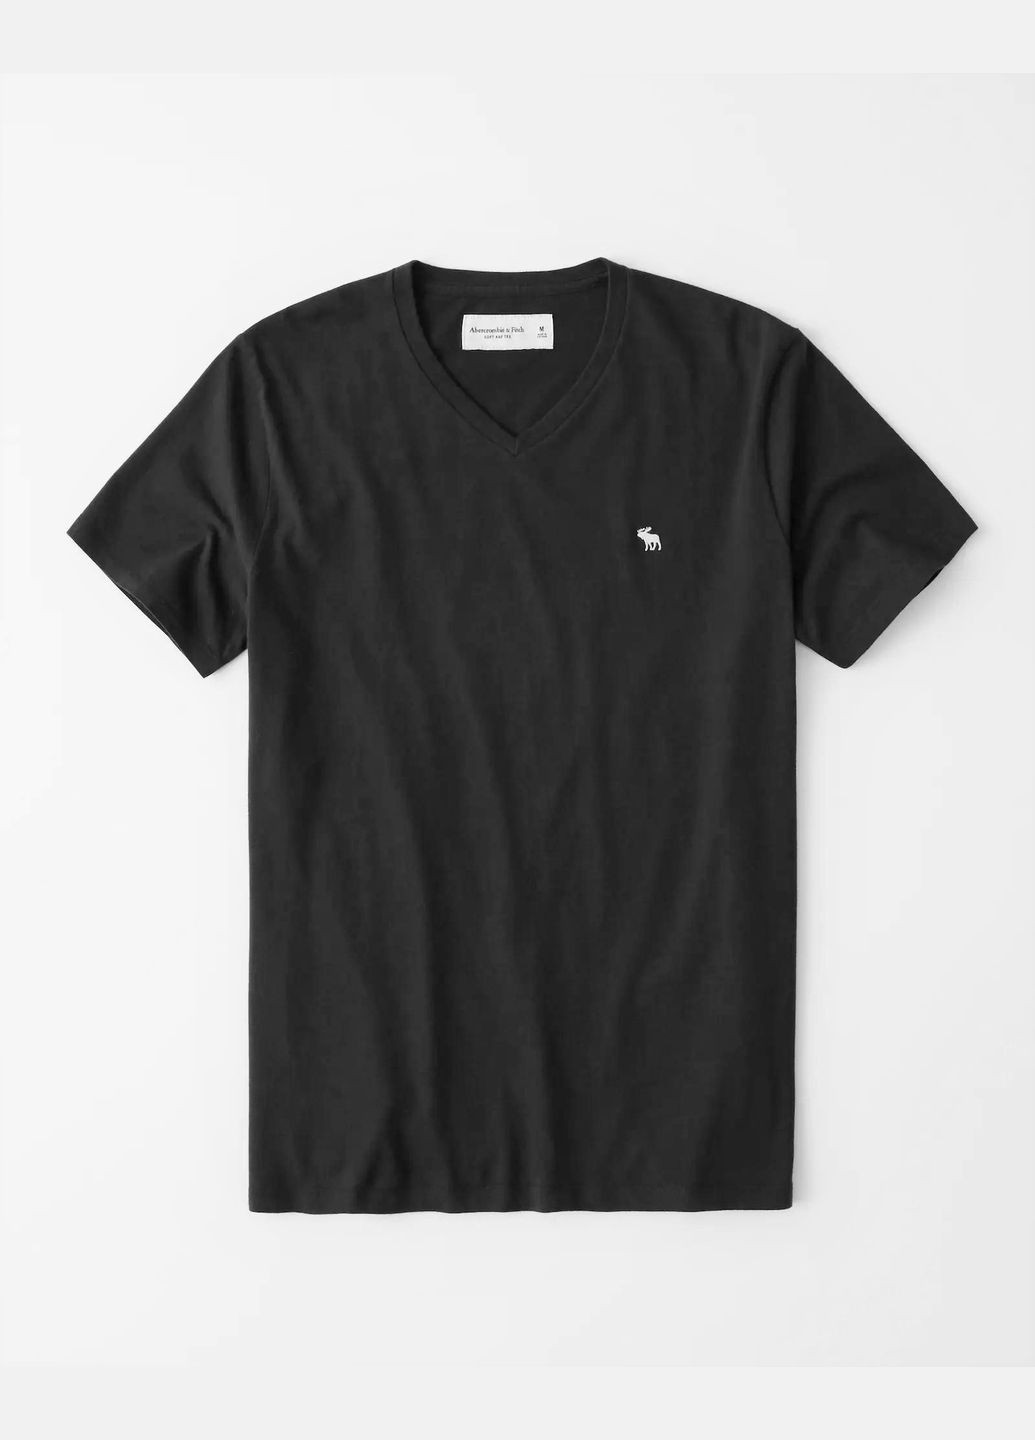 Черная черная футболка - мужская футболка af8566m Abercrombie & Fitch